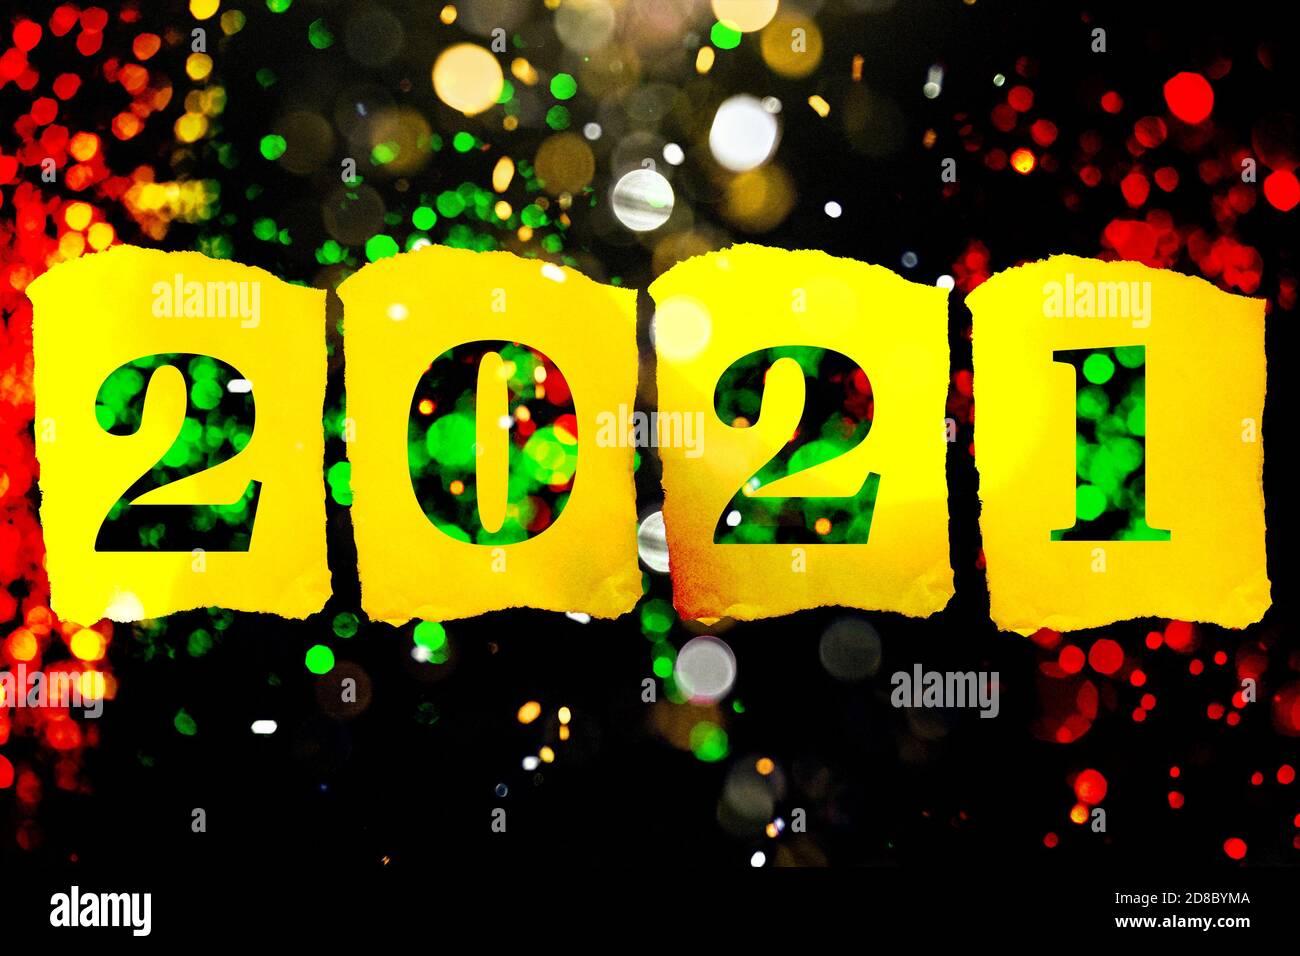 Bonne Saint-Sylvestre 2021 avec fond rouge vert et noir et chiffres pour la nouvelle année en or. Signe d'espoir et de bonheur. Banque D'Images